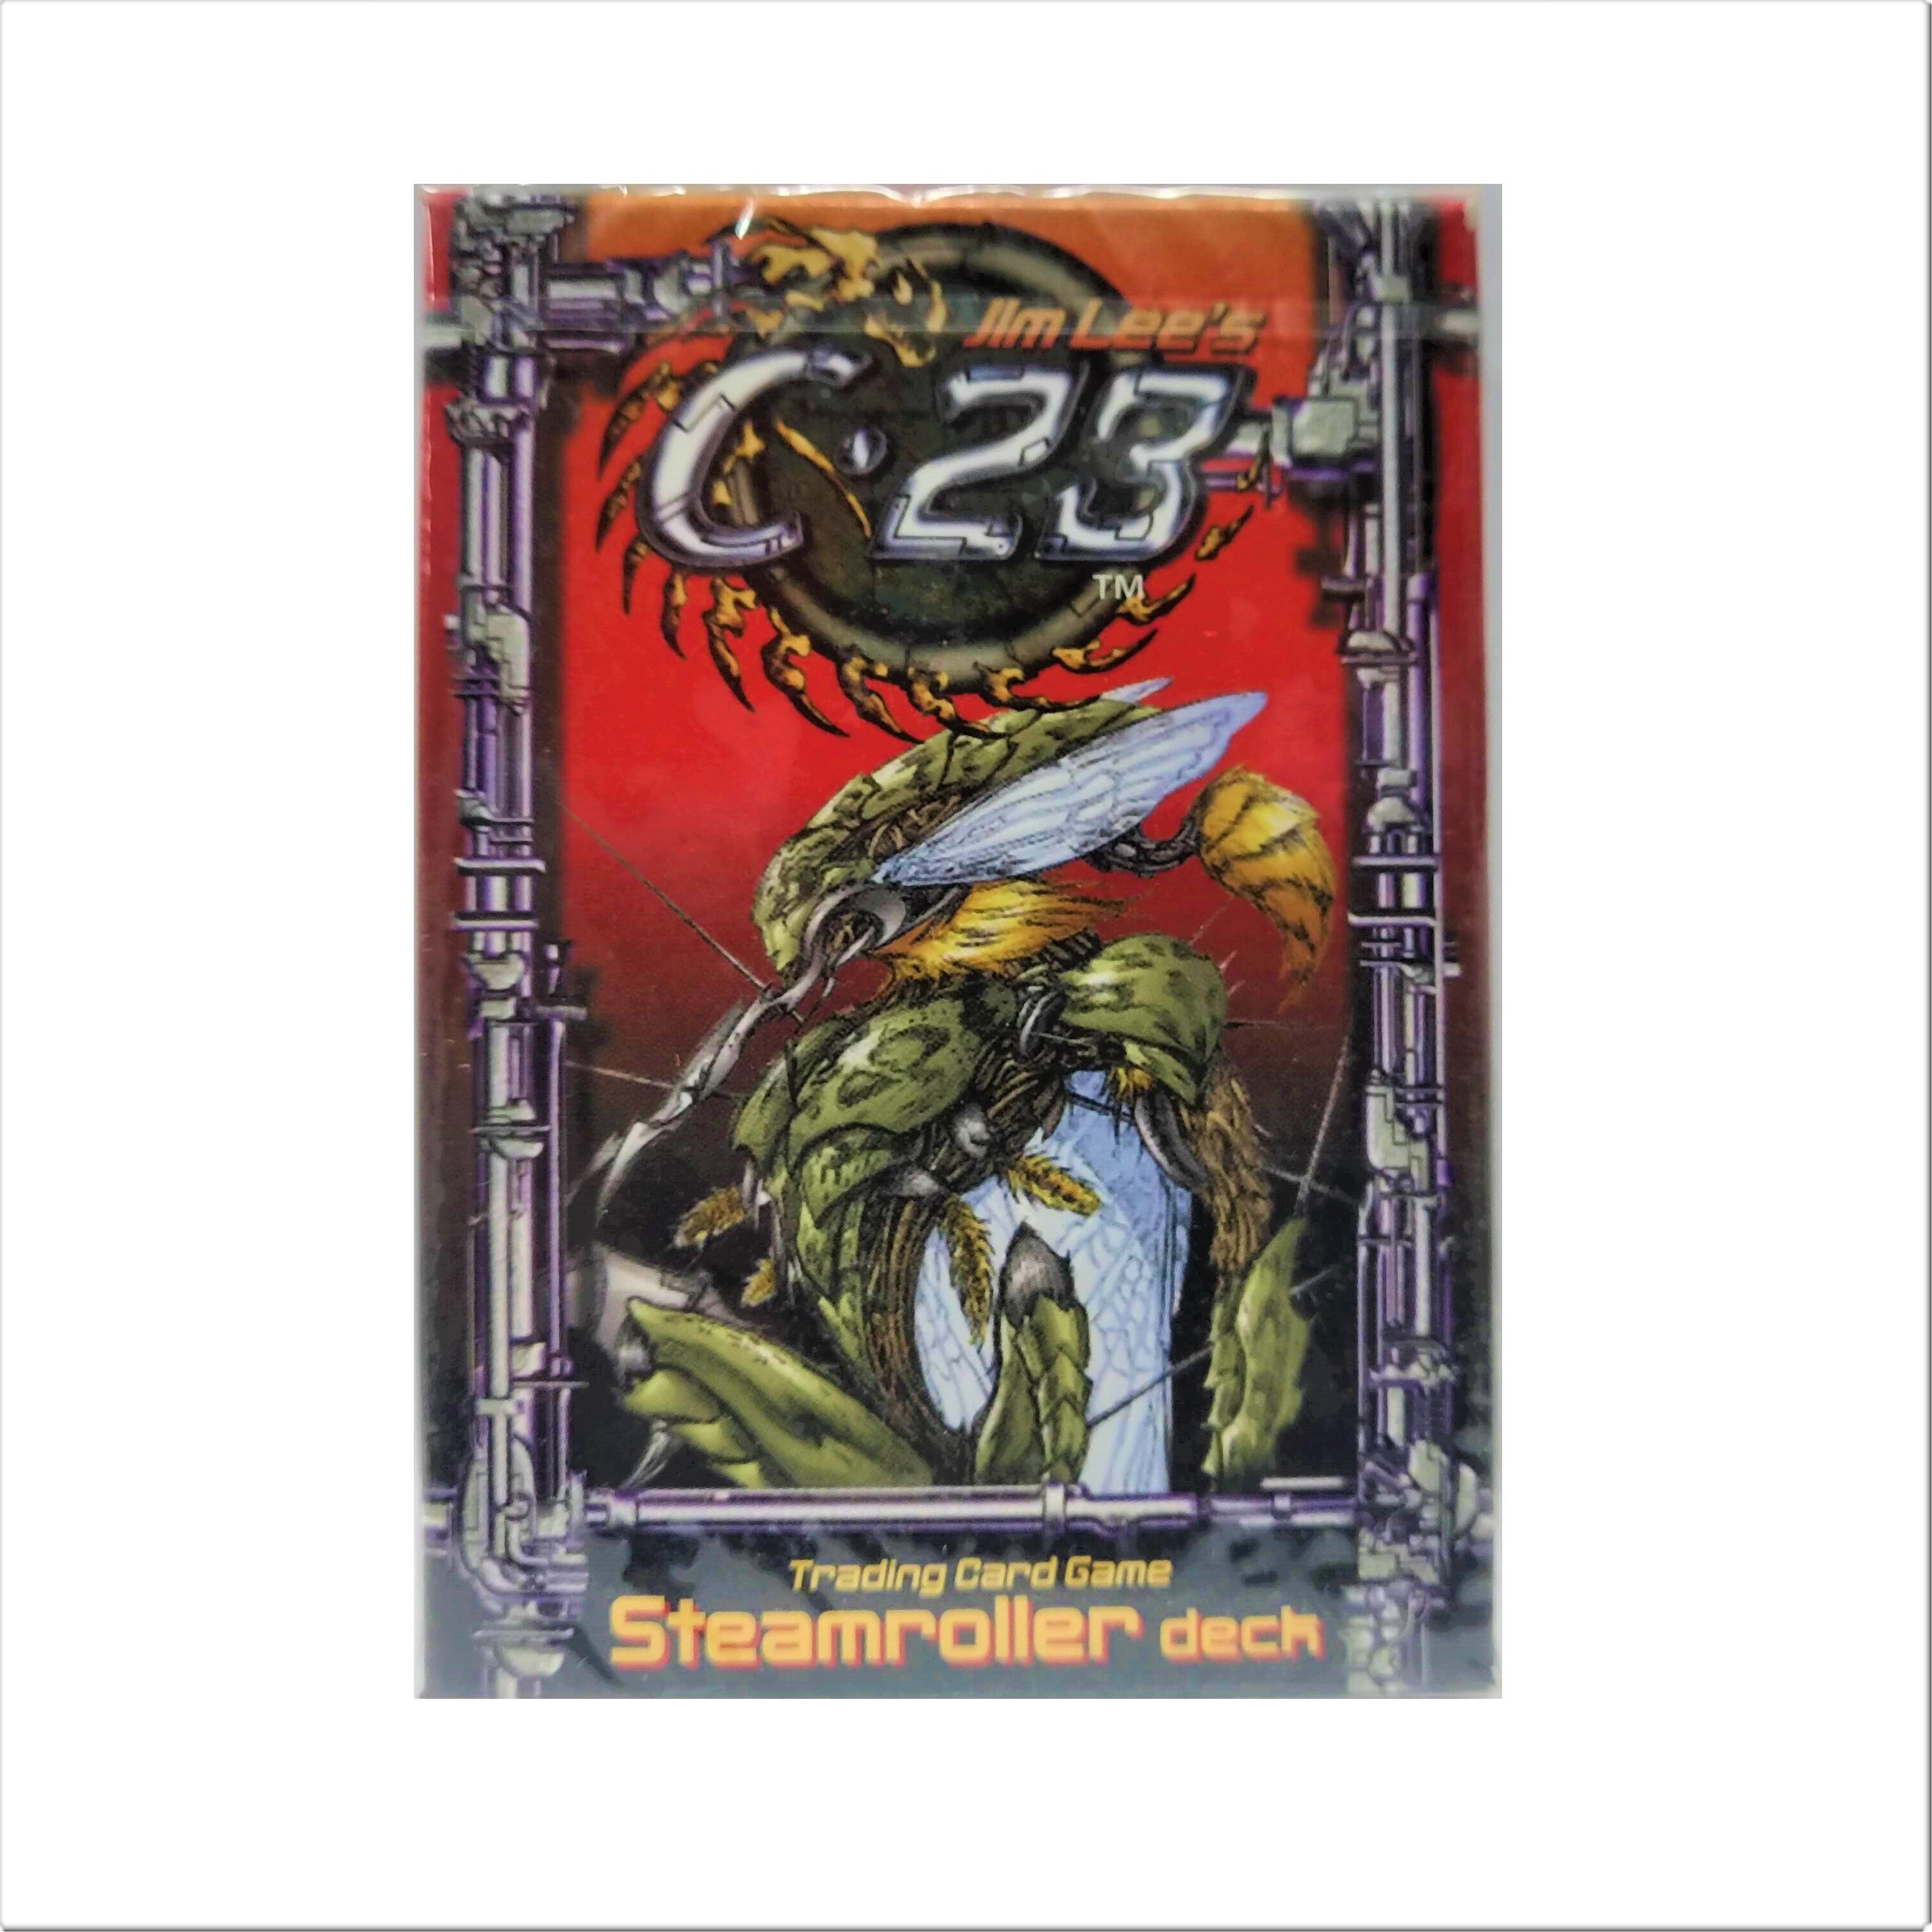 Jim Lee's C23 Trading Card Game Decks - Miraj Trading